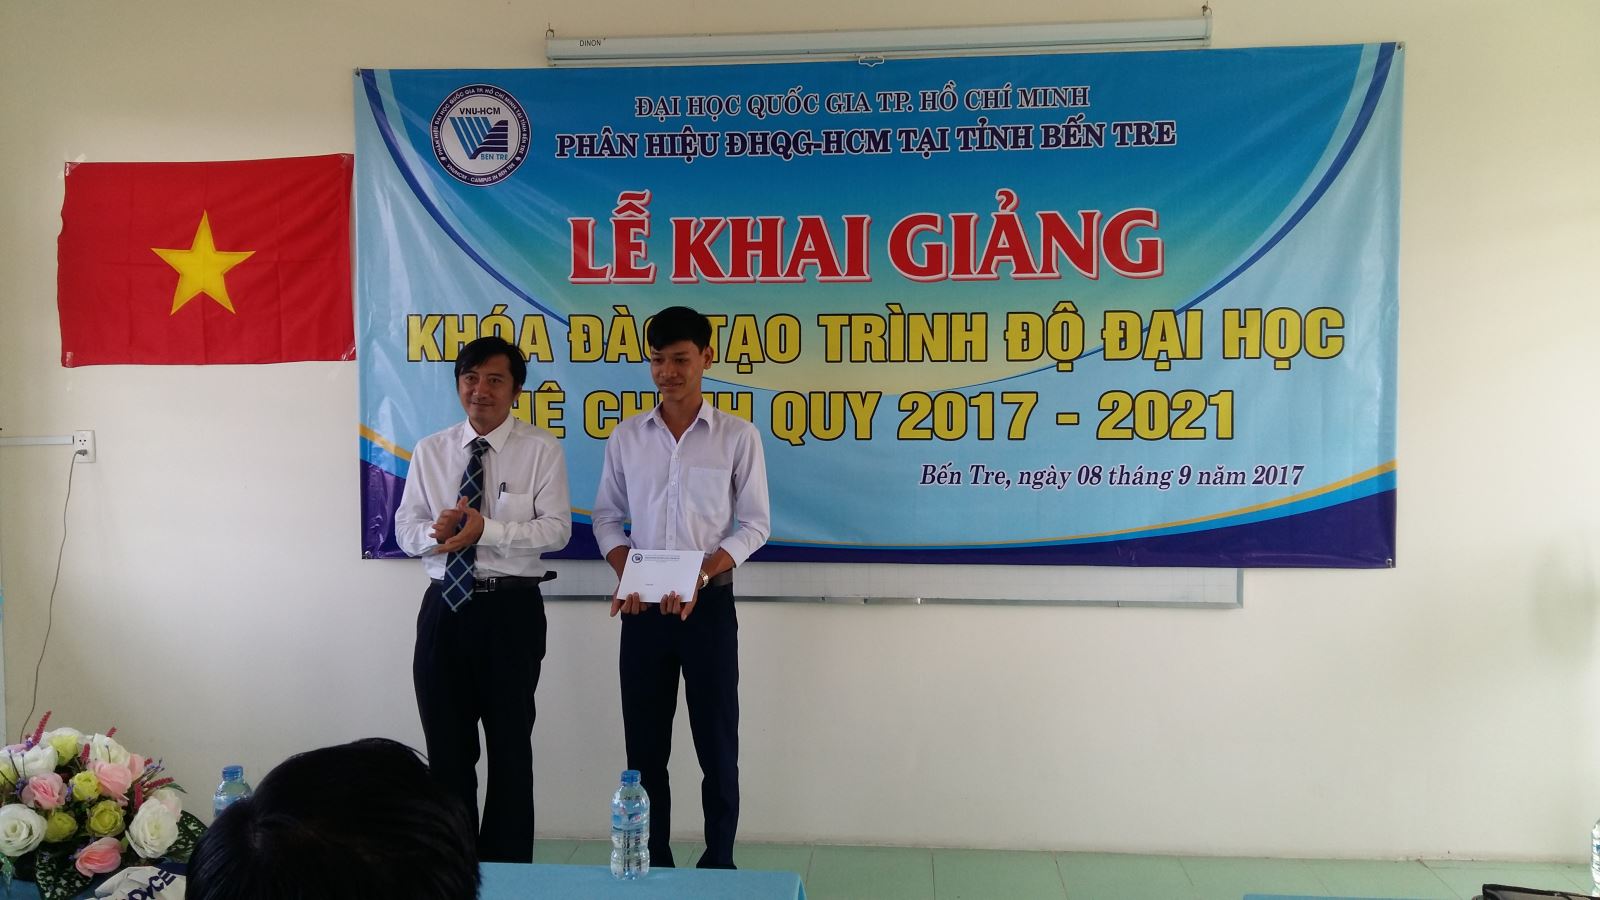 Khai giảng khóa đào tạo trình độ Đại học hệ chính quy đầu tiên ở Phân hiệu Đại học Quốc gia Thành phố Hồ Chí Minh tại tỉnh Bến Tre